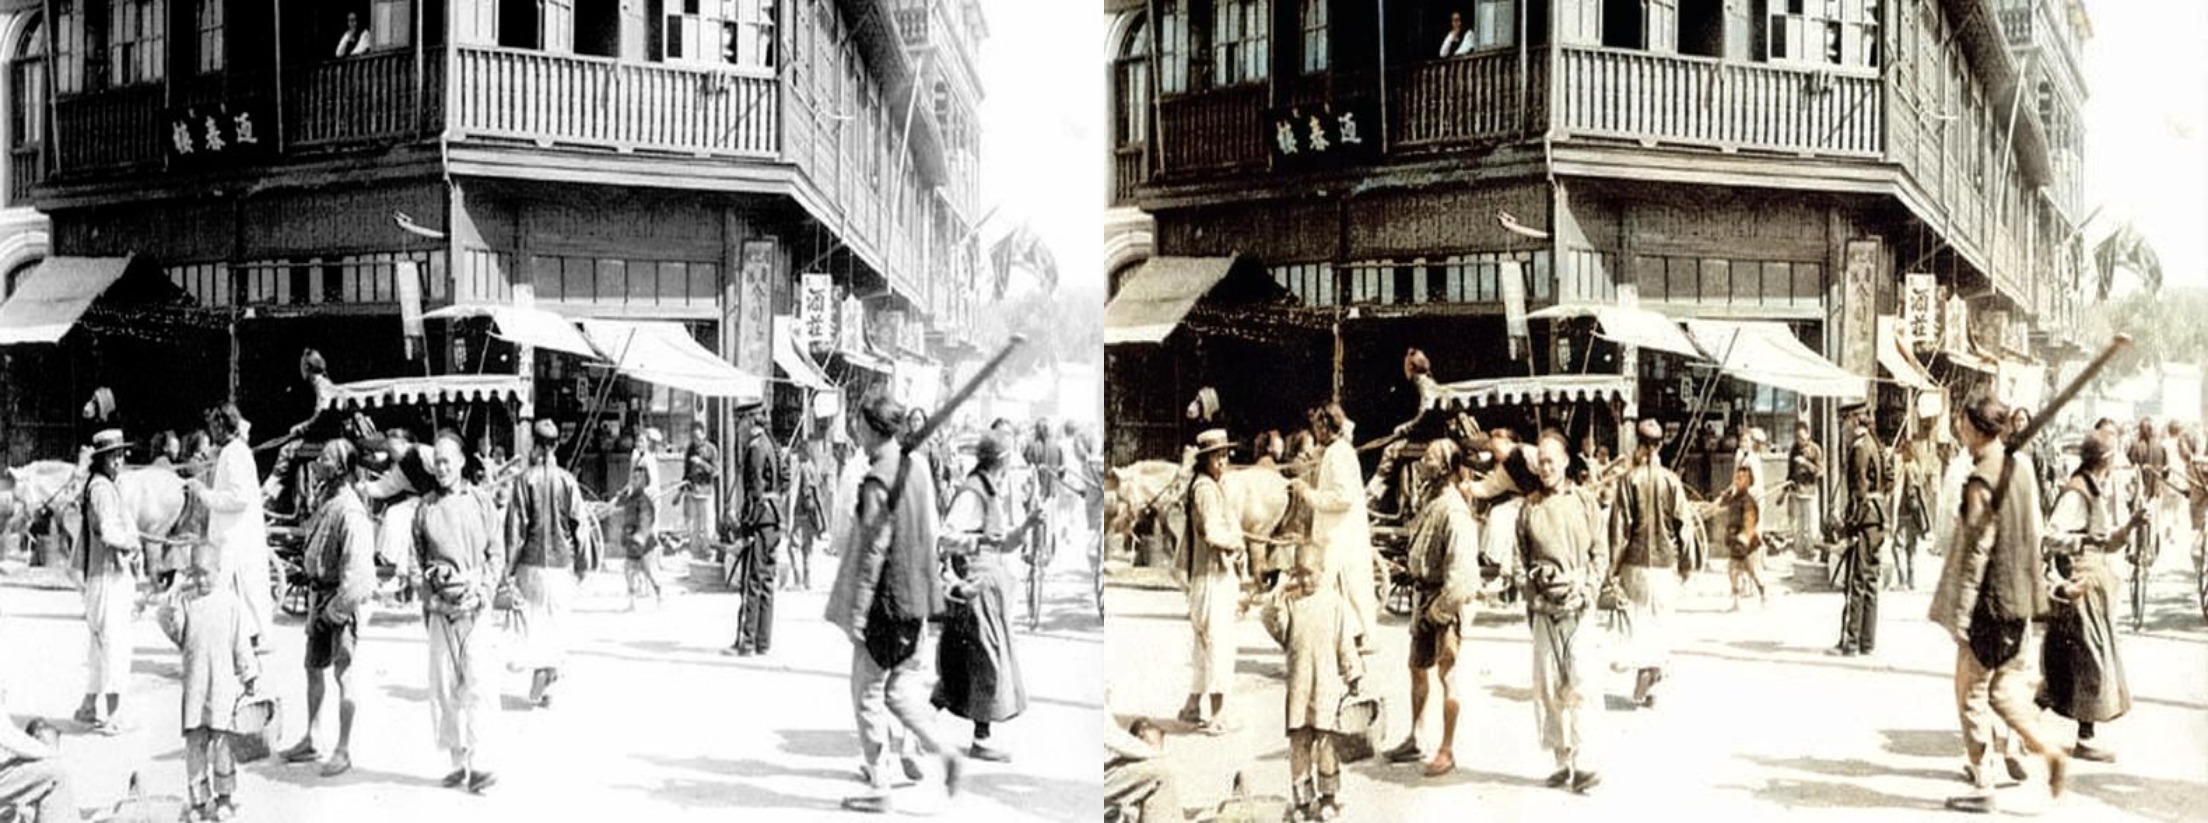 上海的小东门 colorized-image-comparison